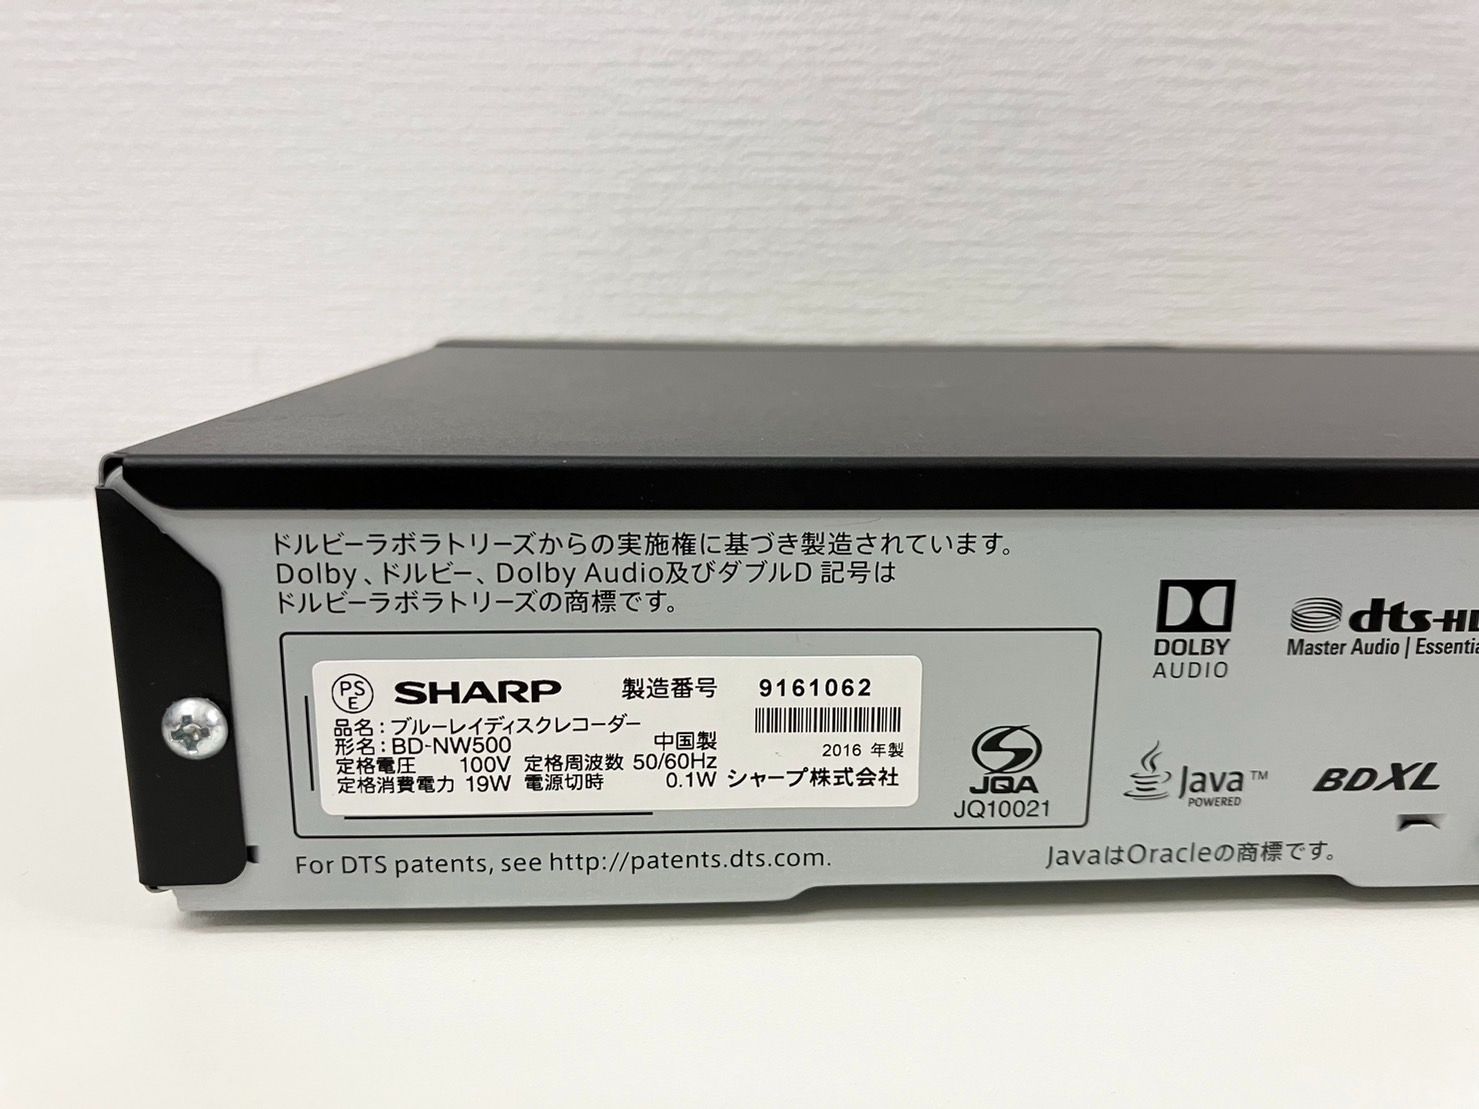 SHARP AQUOS ブルーレイ BD-W520 - テレビ/映像機器